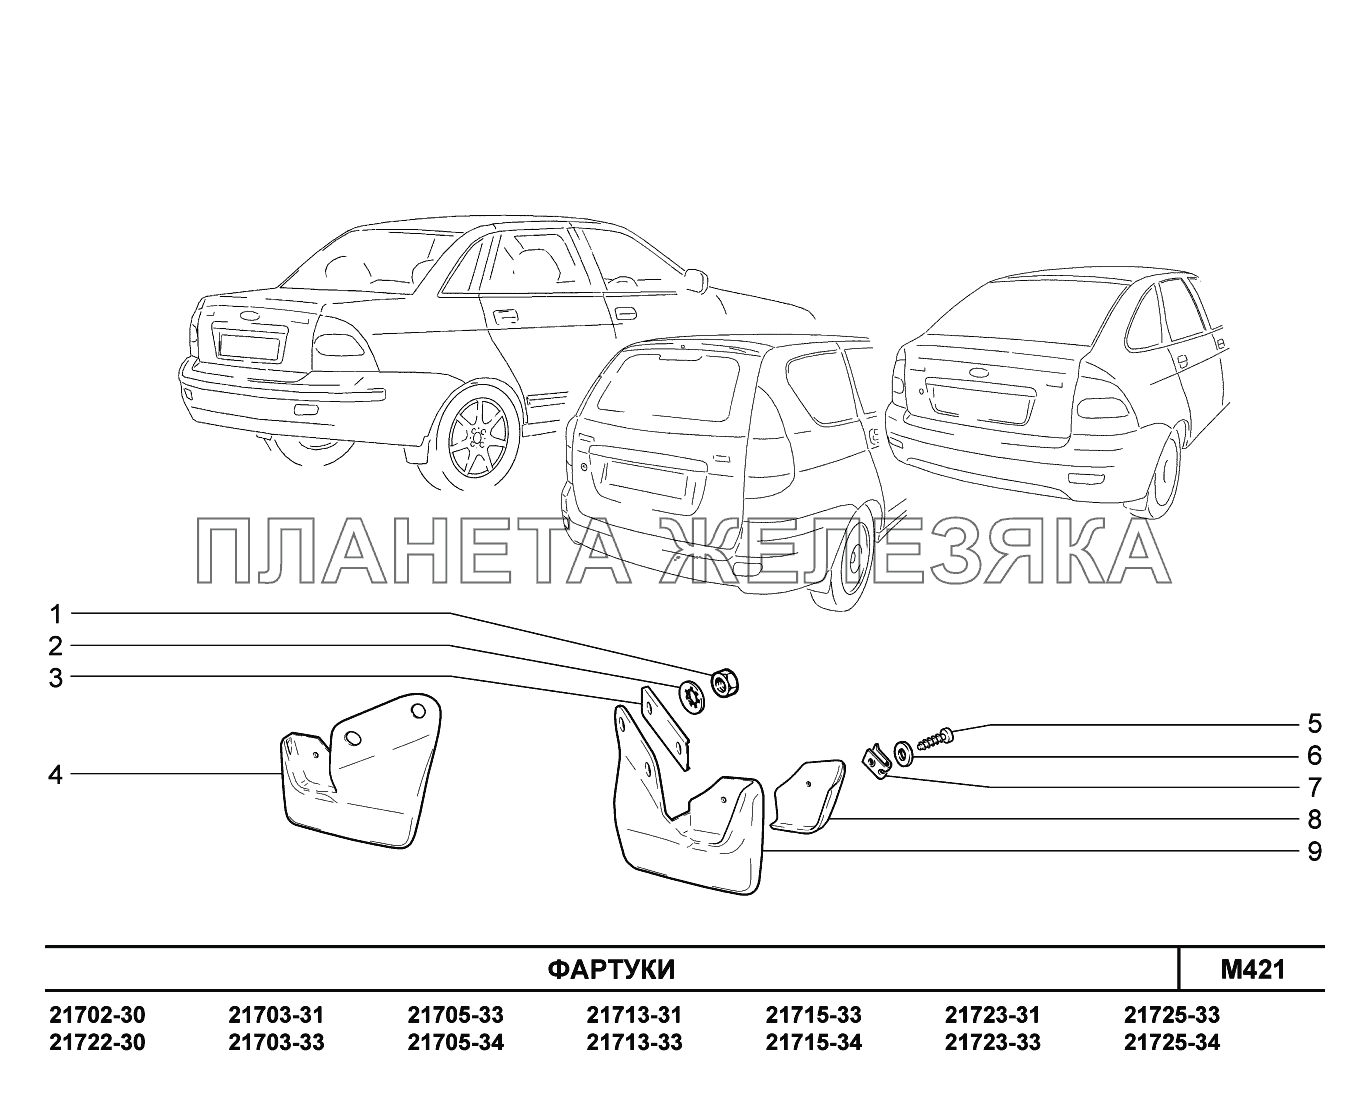 M421. Фартуки ВАЗ-2170 